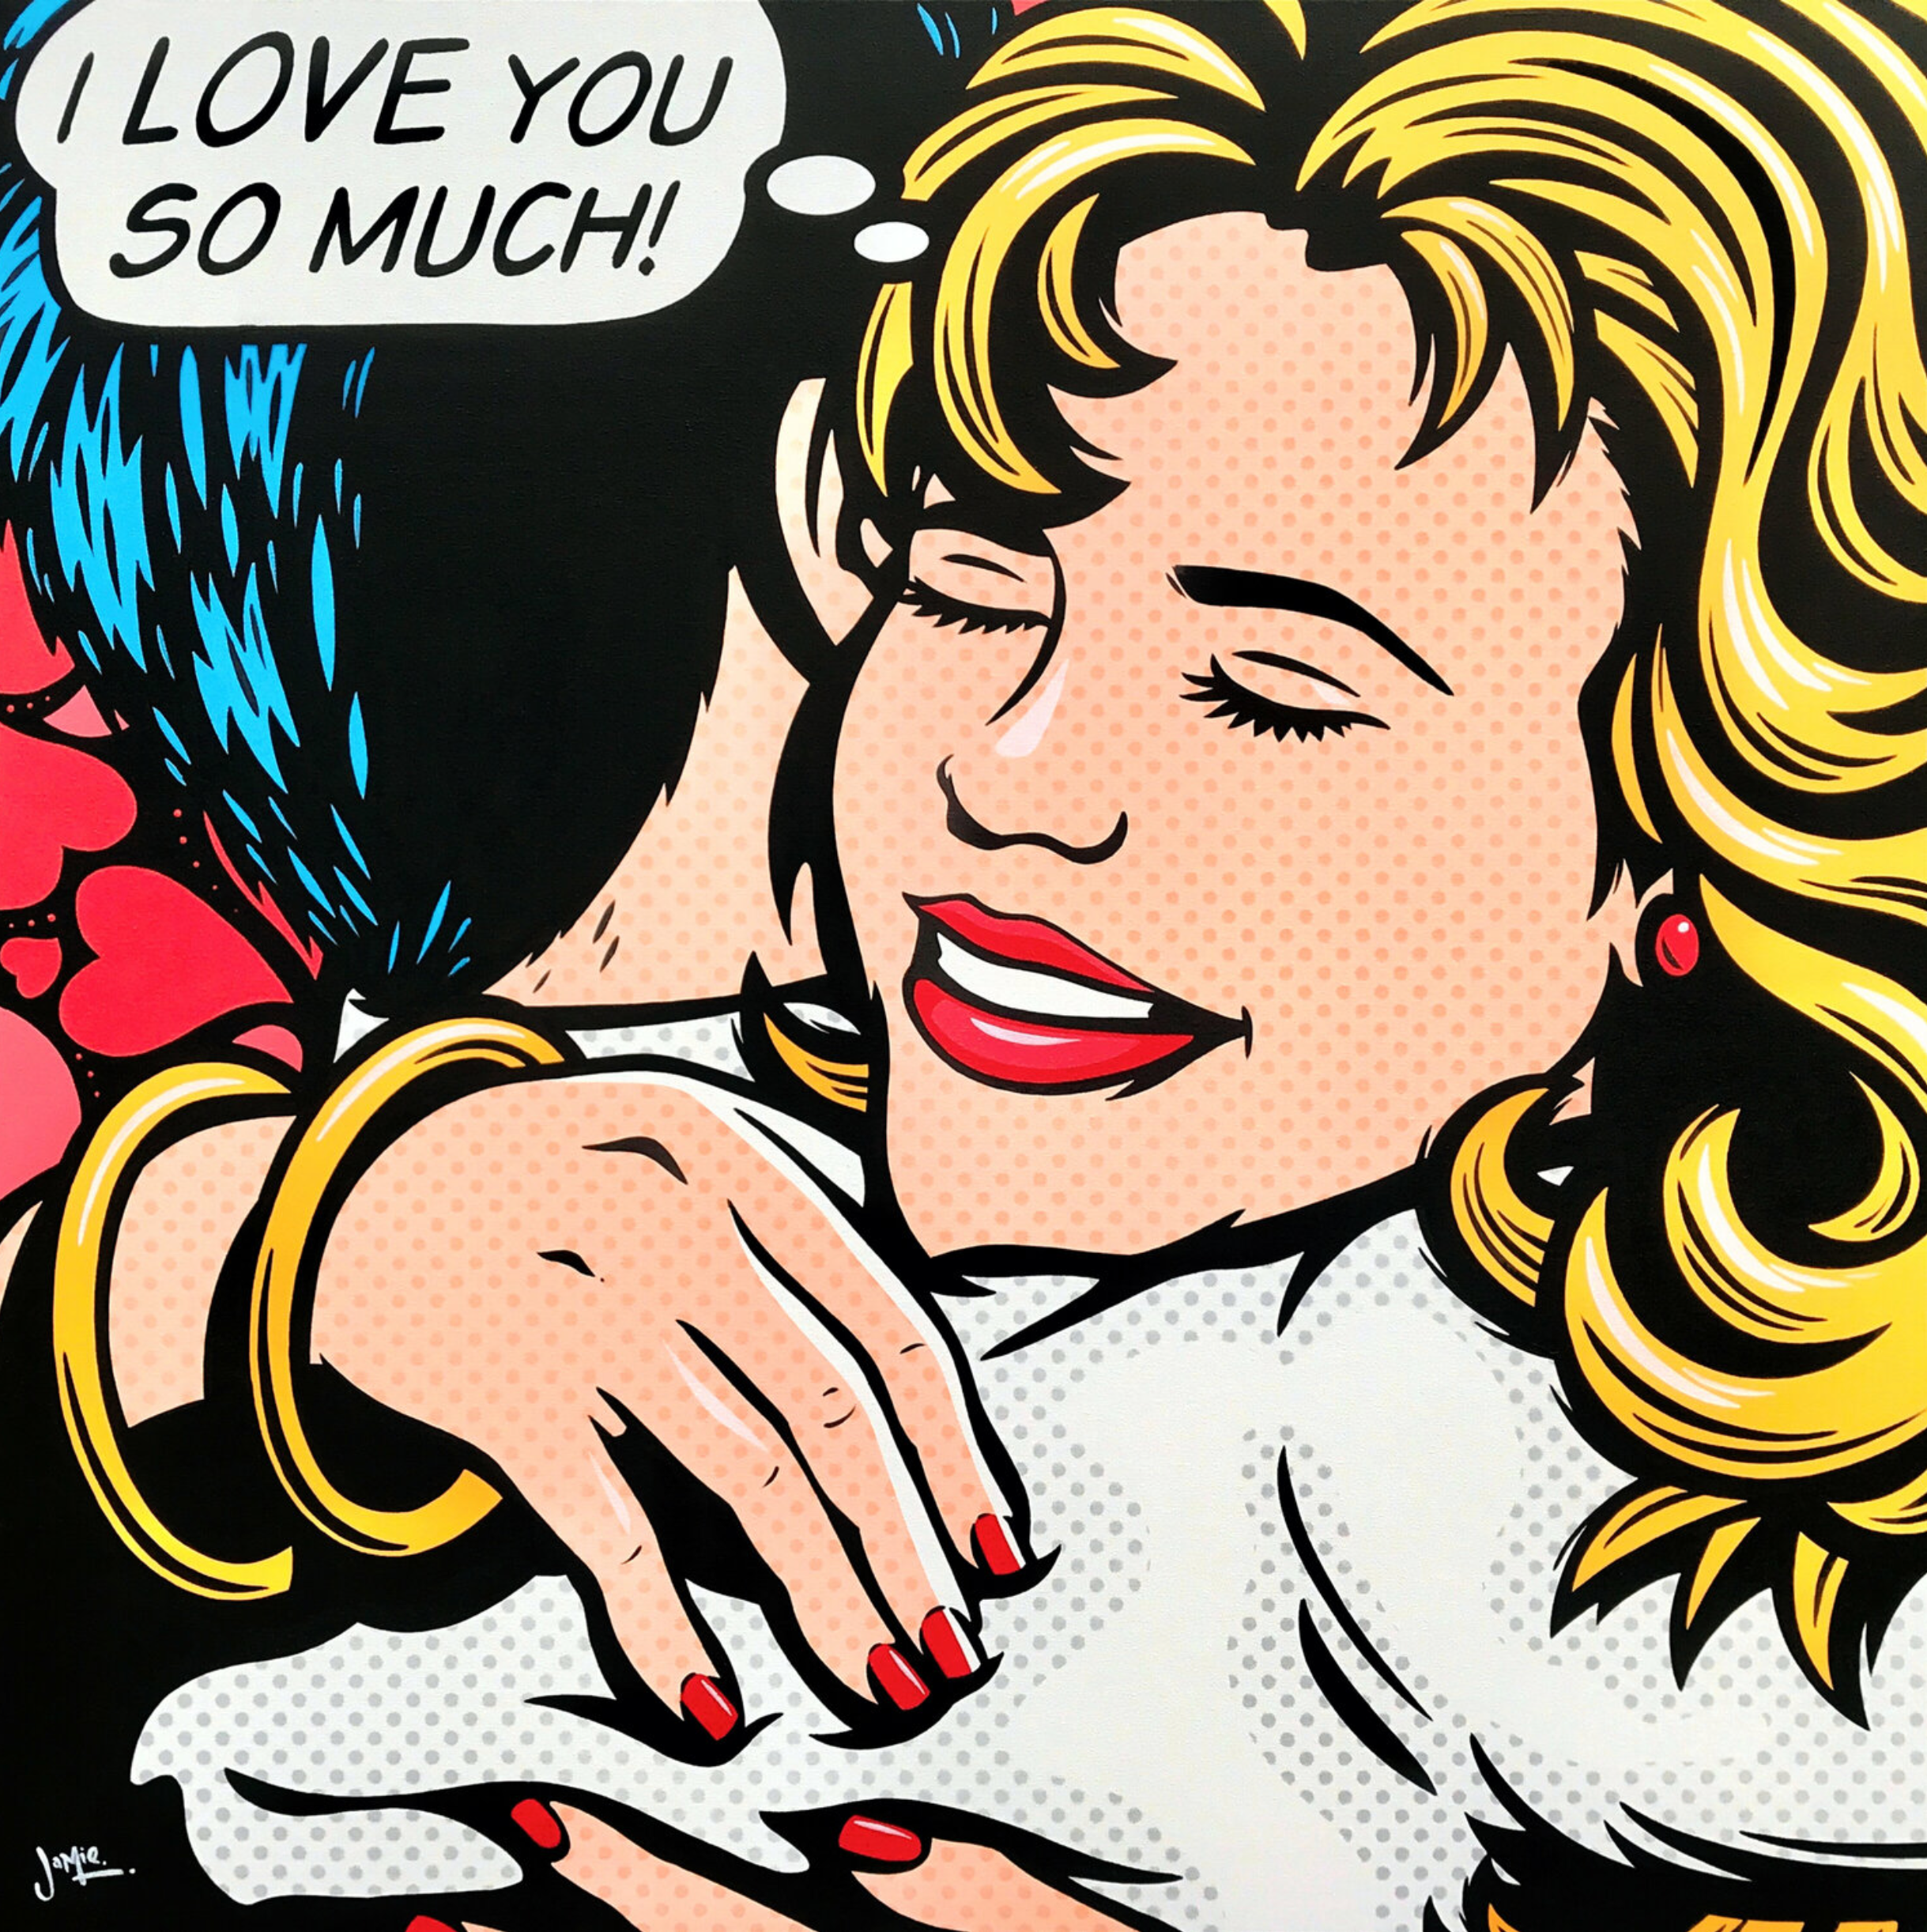 Pintura pop art "I Love You" de Jamie Lee en estilo cómic.  Diseño original, pop art pintado a mano. Una joven pareja abrazada con una burbuja de pensamiento: "Te quiero mucho". Pero, ¿quién lo está pensando? ¿Ella, él, tal vez ambos?